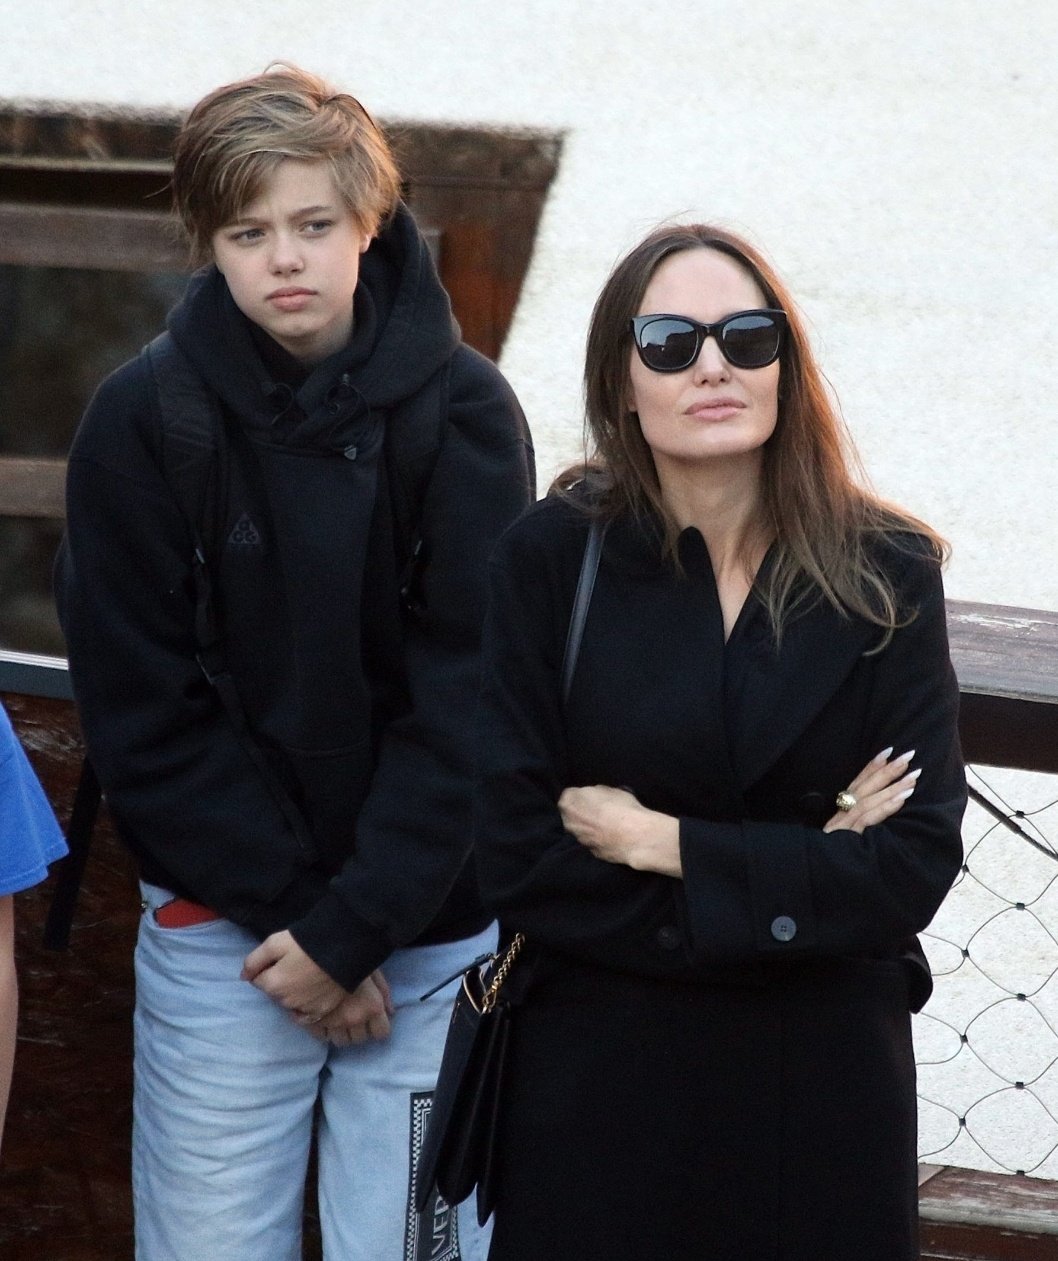 Đến tận đầu năm 2020, con gái của cặp đôi Jolie-Pitt vẫn trung thành với áo sơ mi, quần dài và giày thể thao nam tính, dẫu vóc dáng và khuôn mặt của Shiloh có thể đã trải qua rất nhiều biến đổi trong những năm qua.